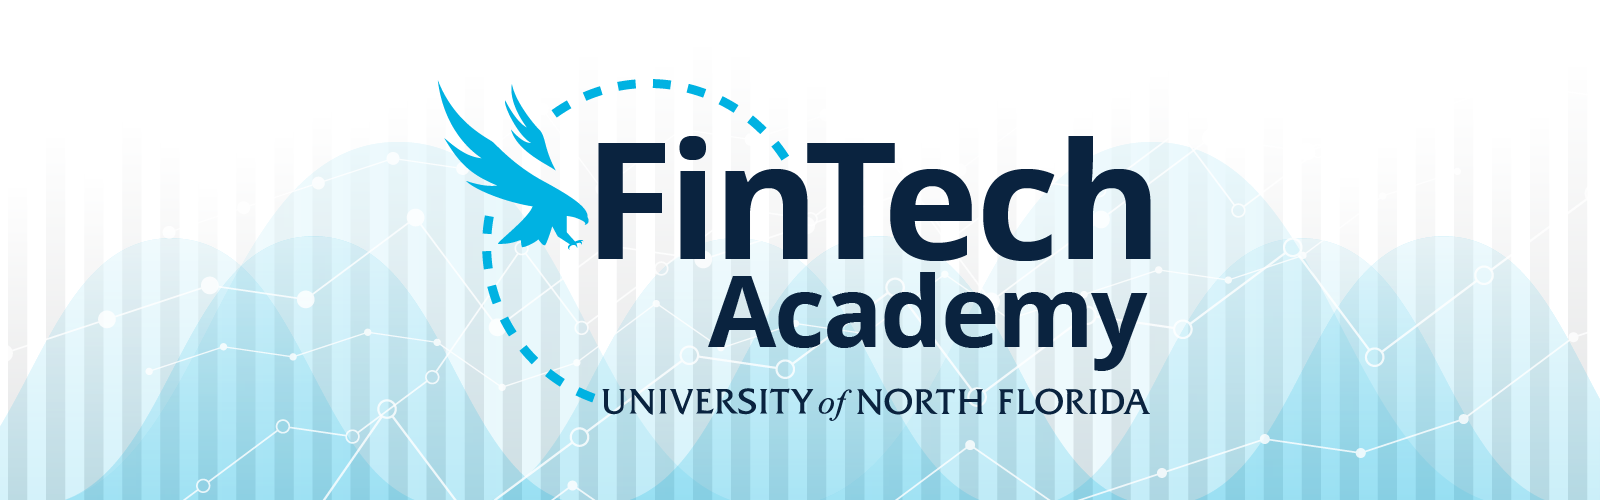 FinTech Academy Banner